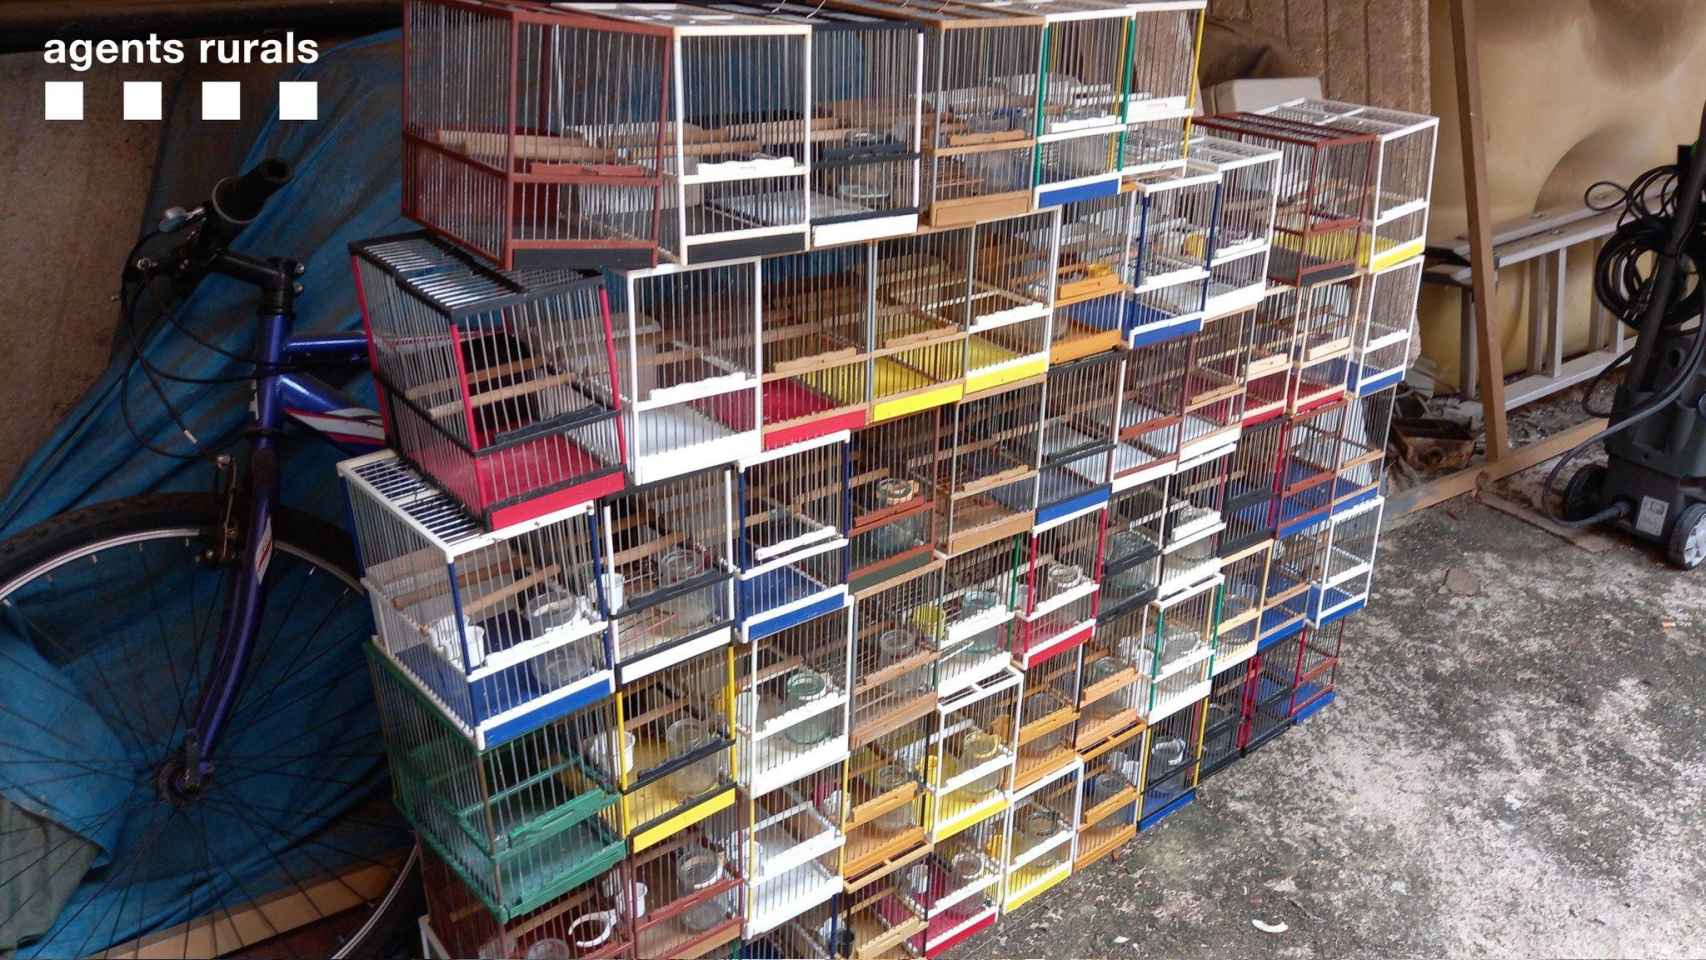 Las aves decomisadas en la tienda ilegal de Taradell (Barcelona) / AGENTS RURALS